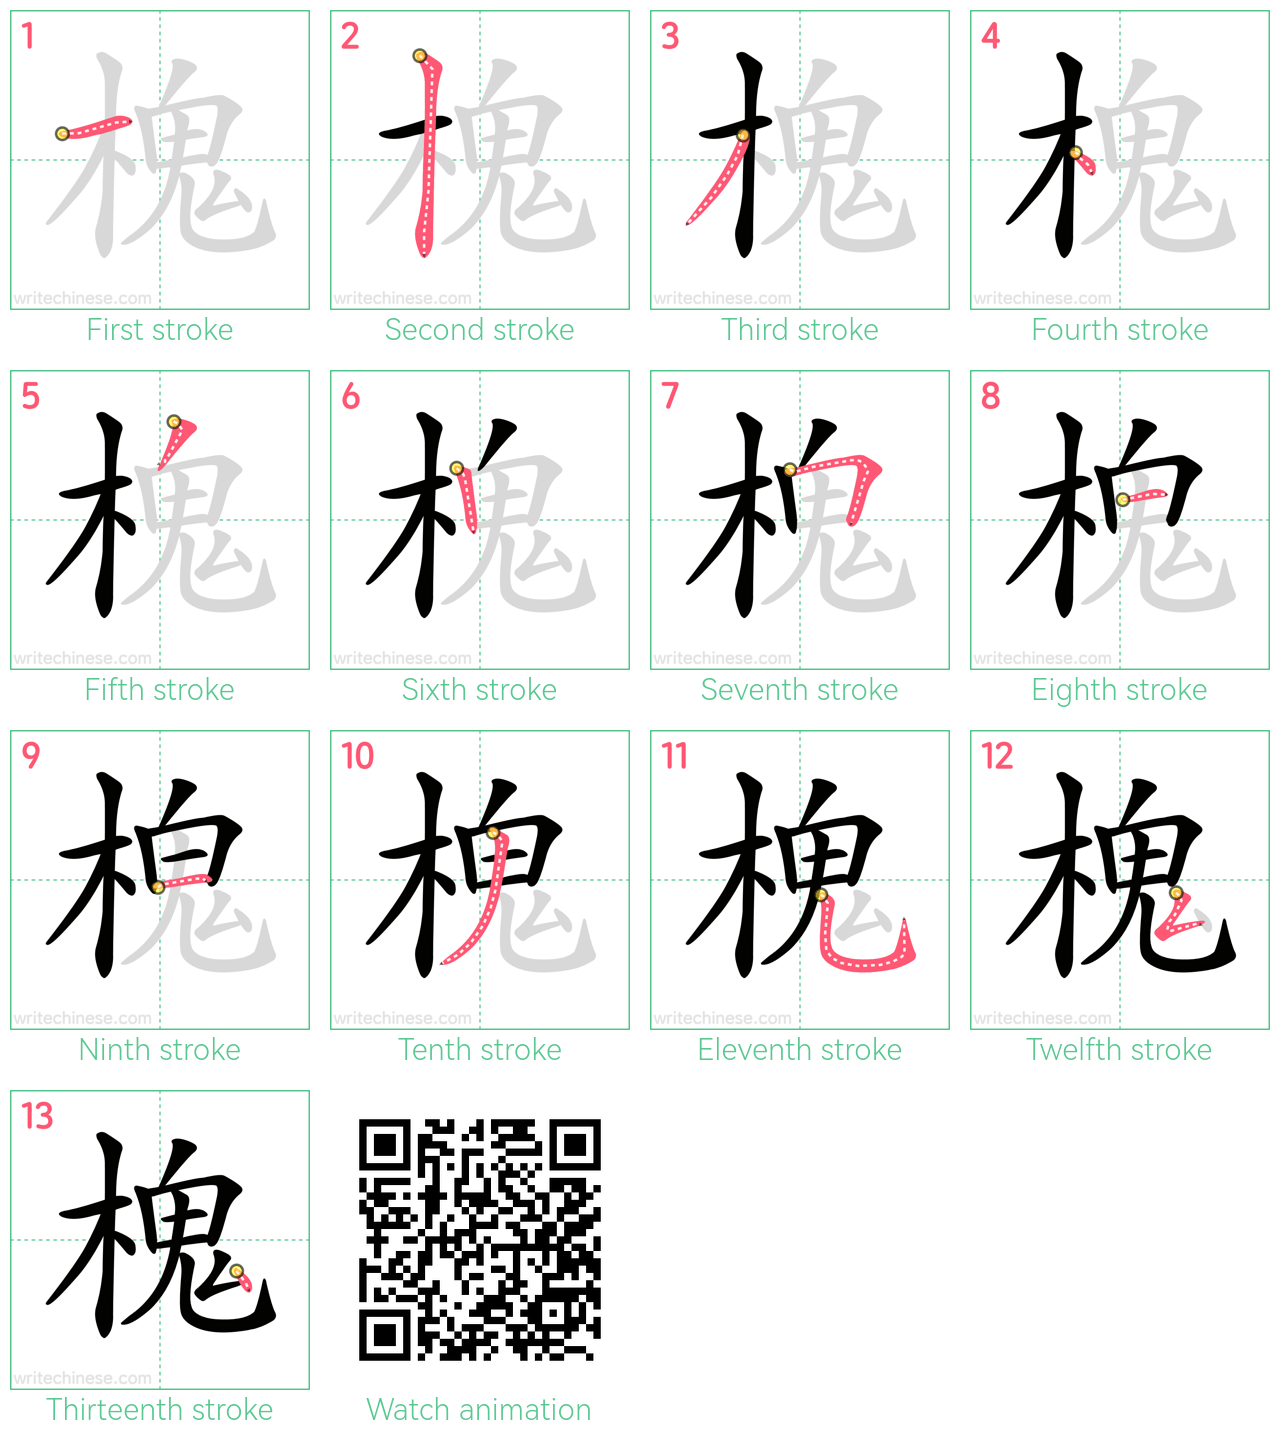 槐 step-by-step stroke order diagrams